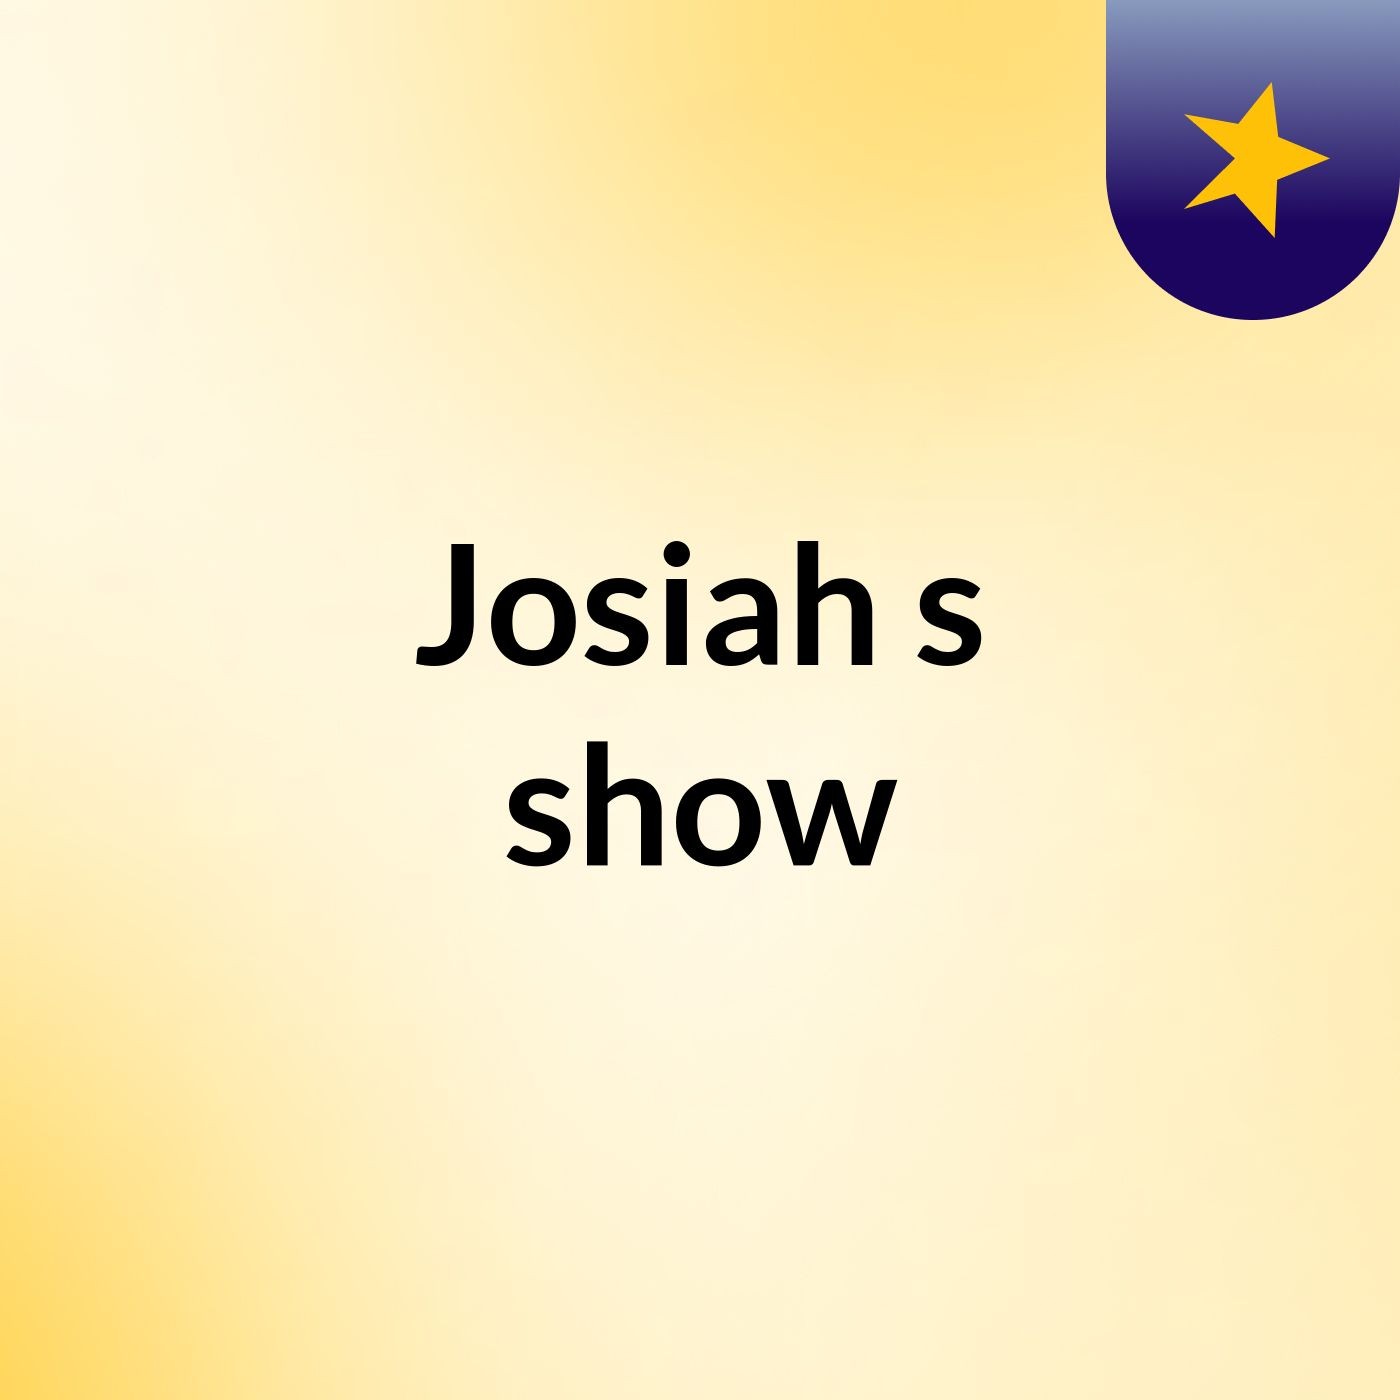 Josiah's show